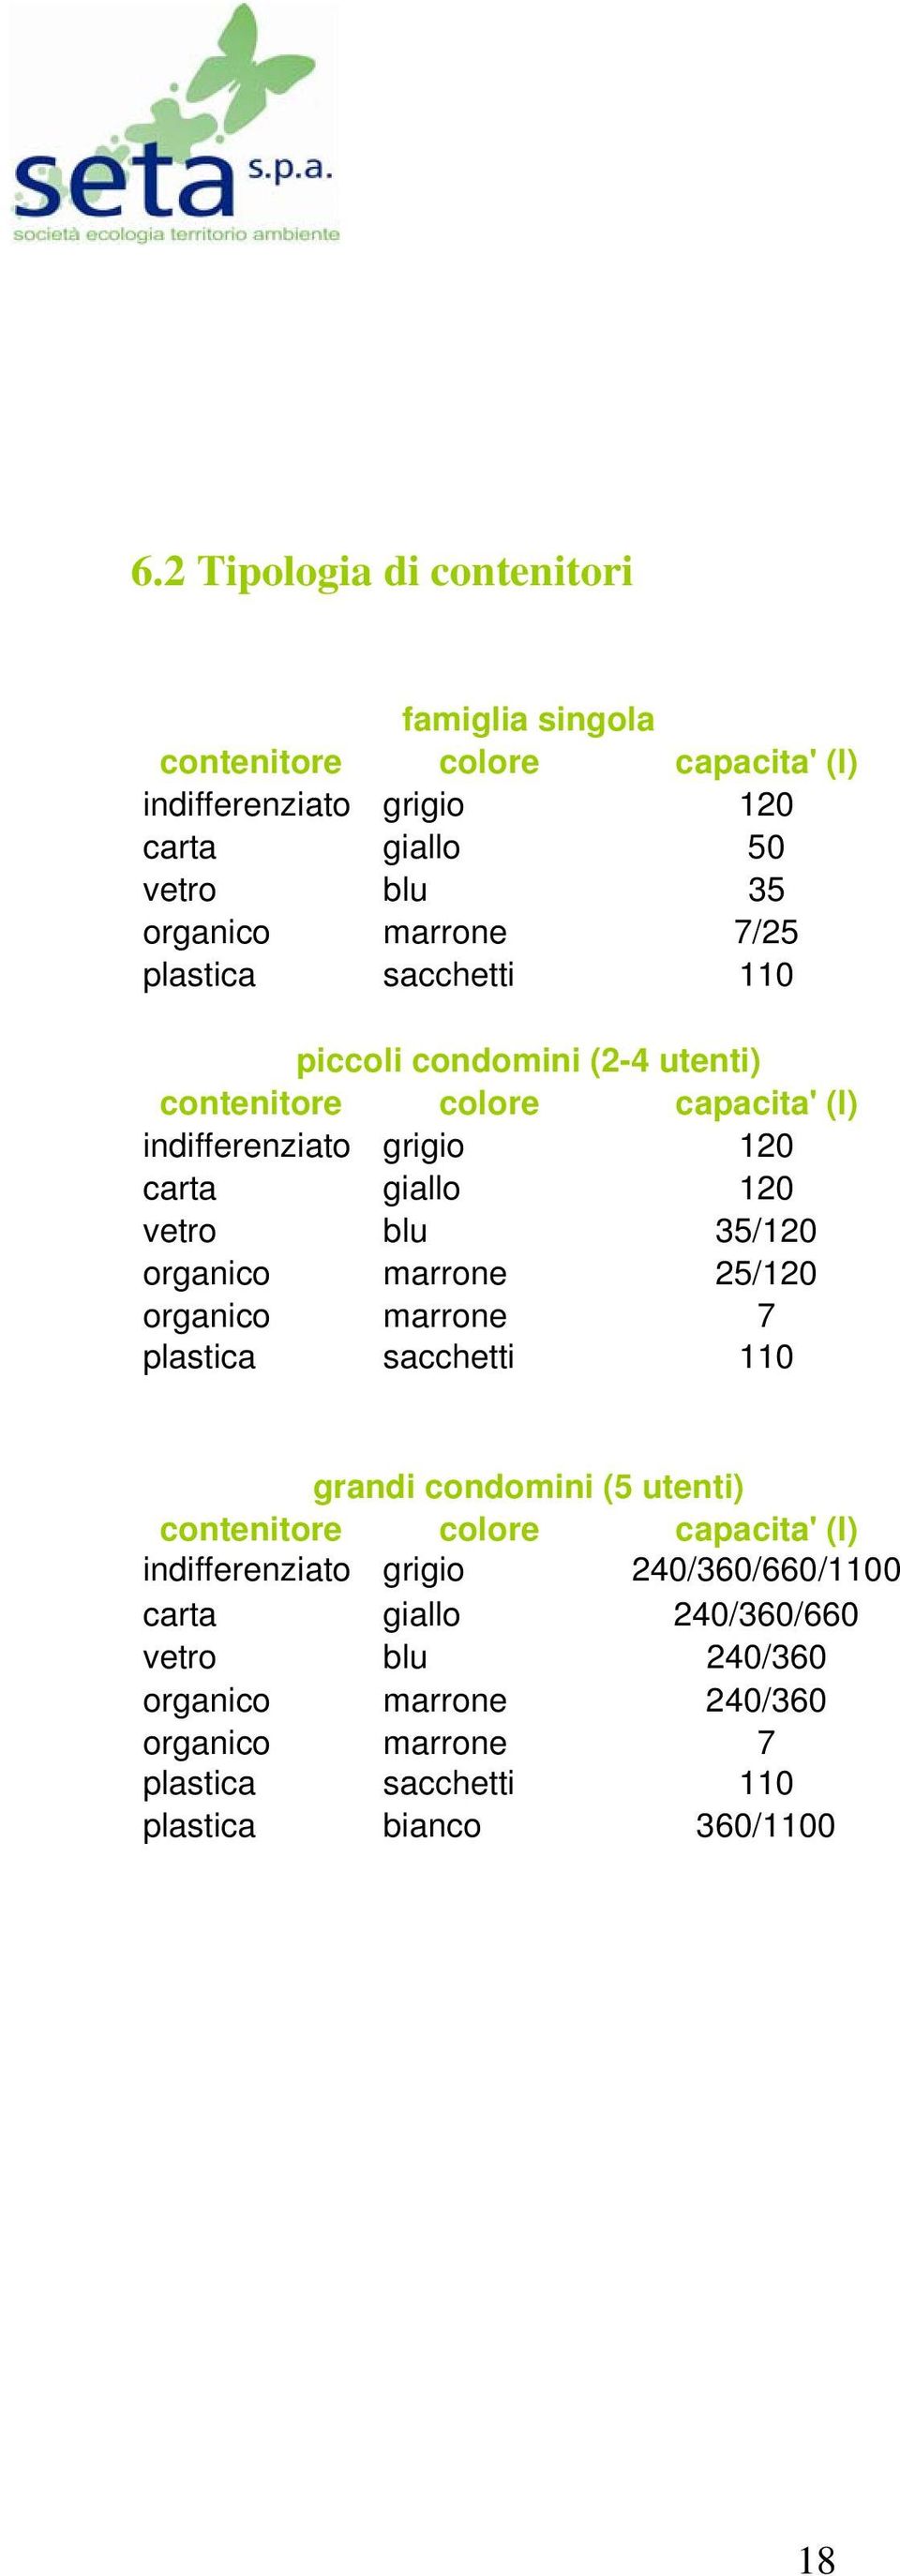 organico marrone 25/120 organico marrone 7 plastica sacchetti 110 grandi condomini (5 utenti) contenitore colore capacita' (l) indifferenziato grigio